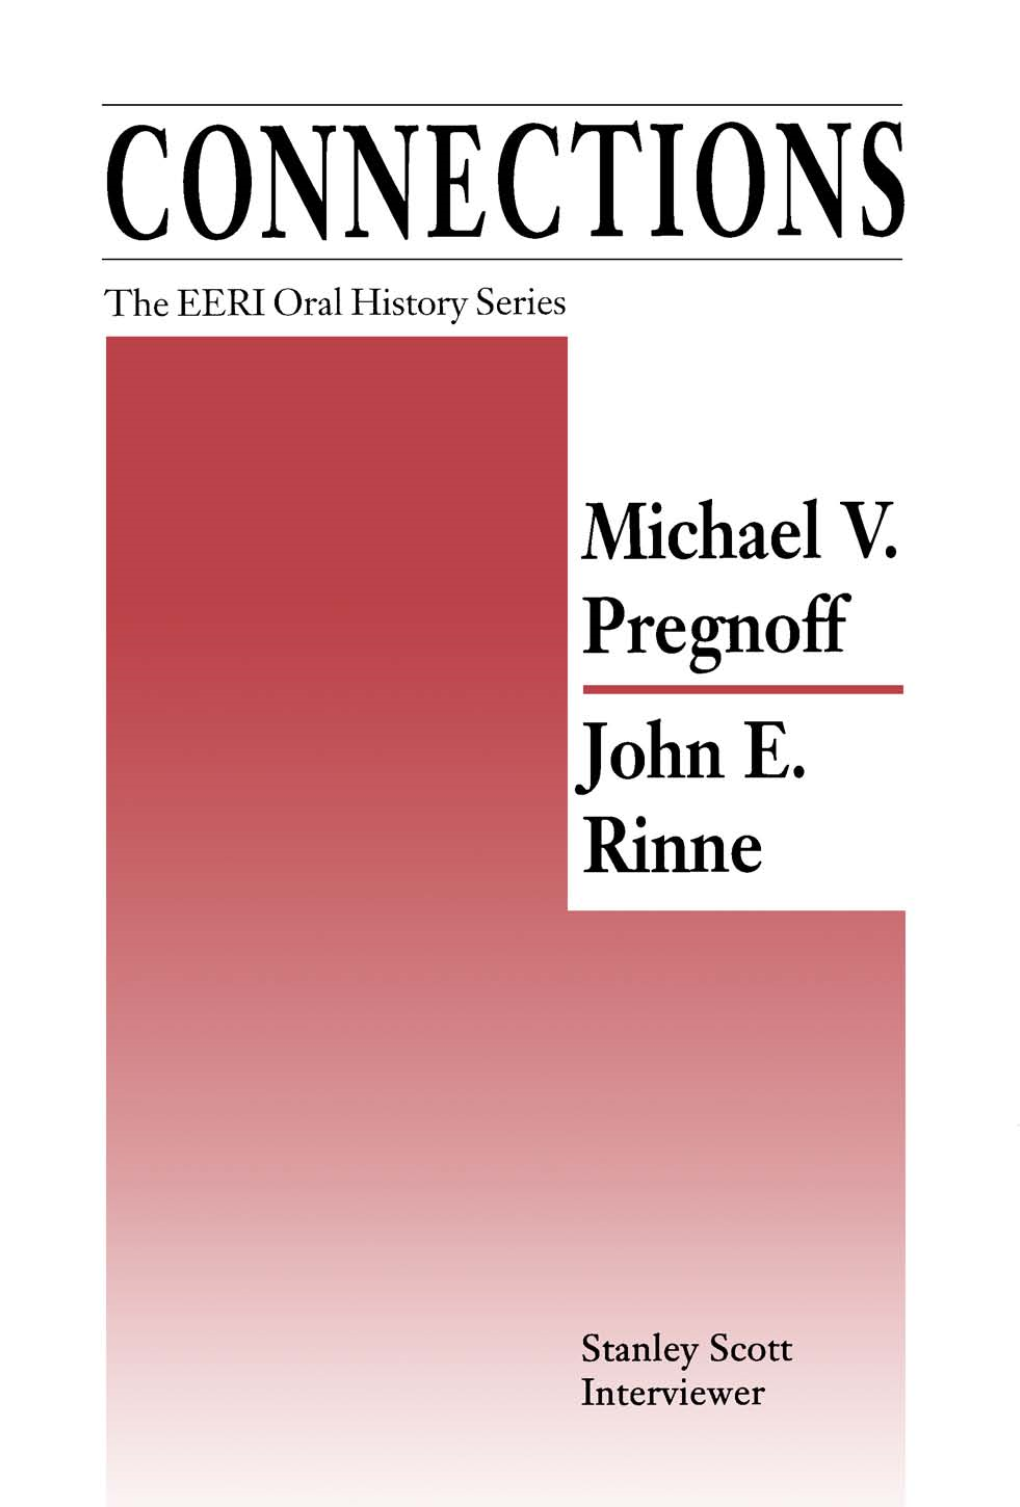 EERI Oral History Series, Vol. 3, Rinne Pregnoff